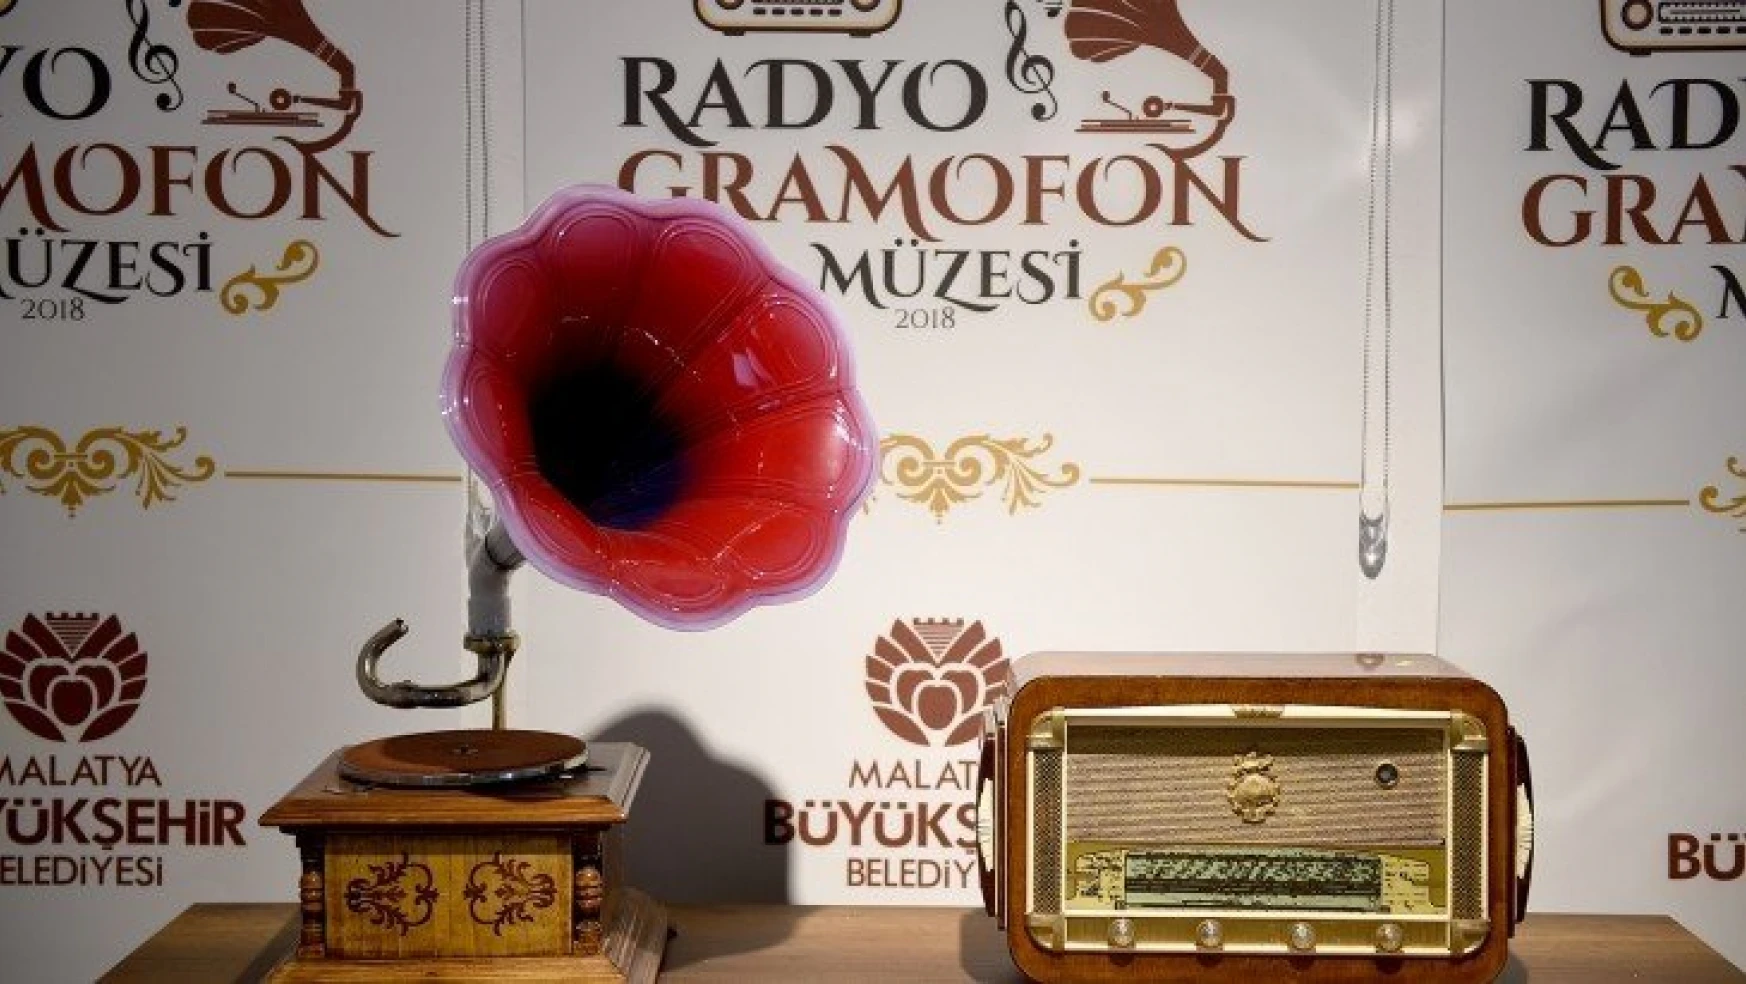 Büyükşehir Belediyesi Radyo ve Gramofon Müzesine yoğun ilgi